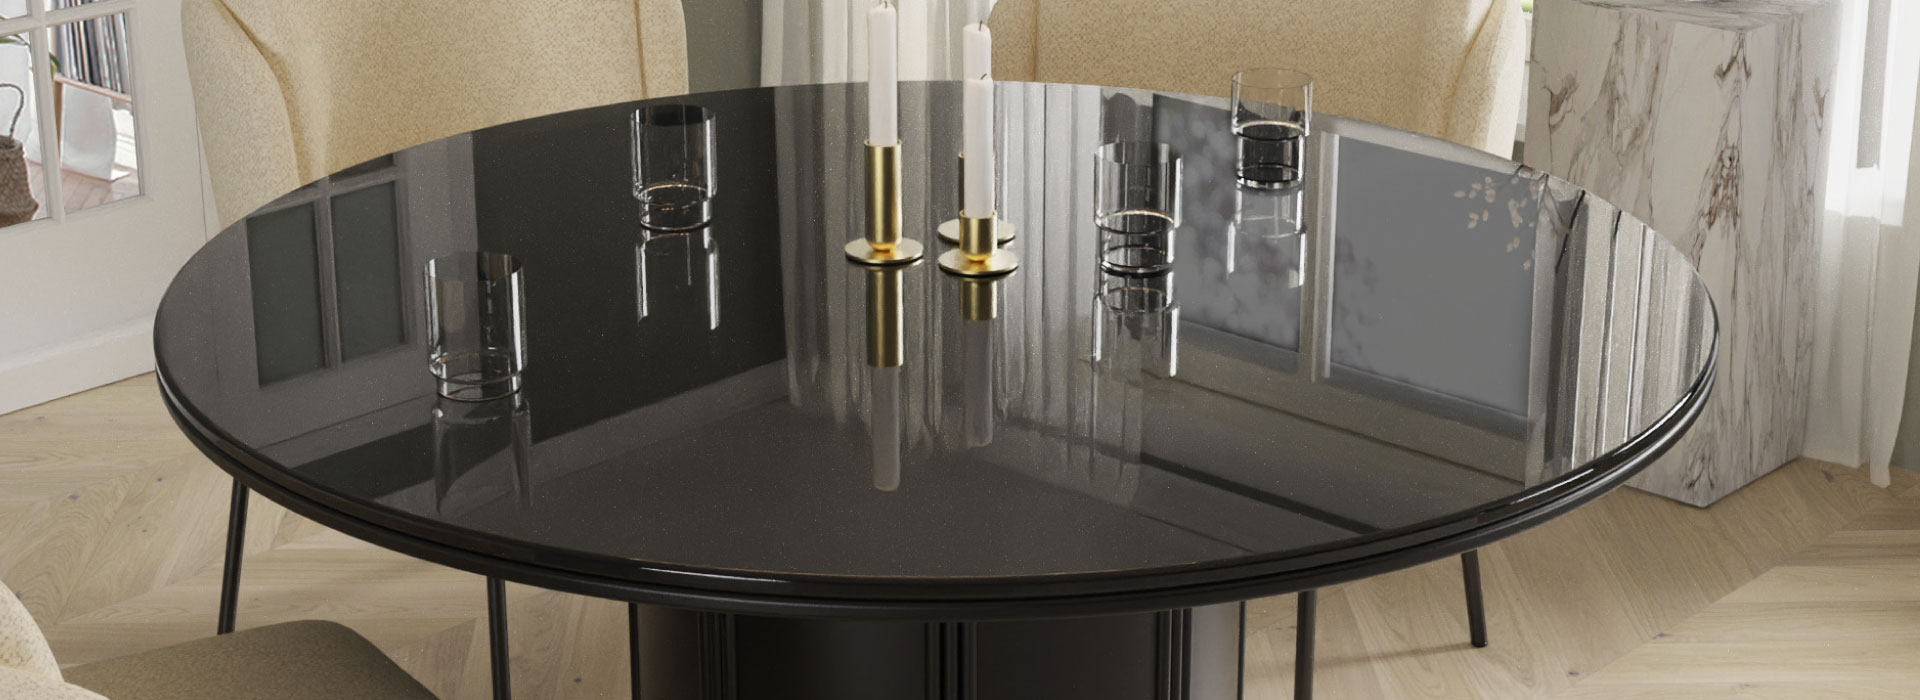 Czarny stół na jednej nodze ze szklanym blatem, na którym stoją szklanki oraz trzy złote świeczniki z białymi świecami.